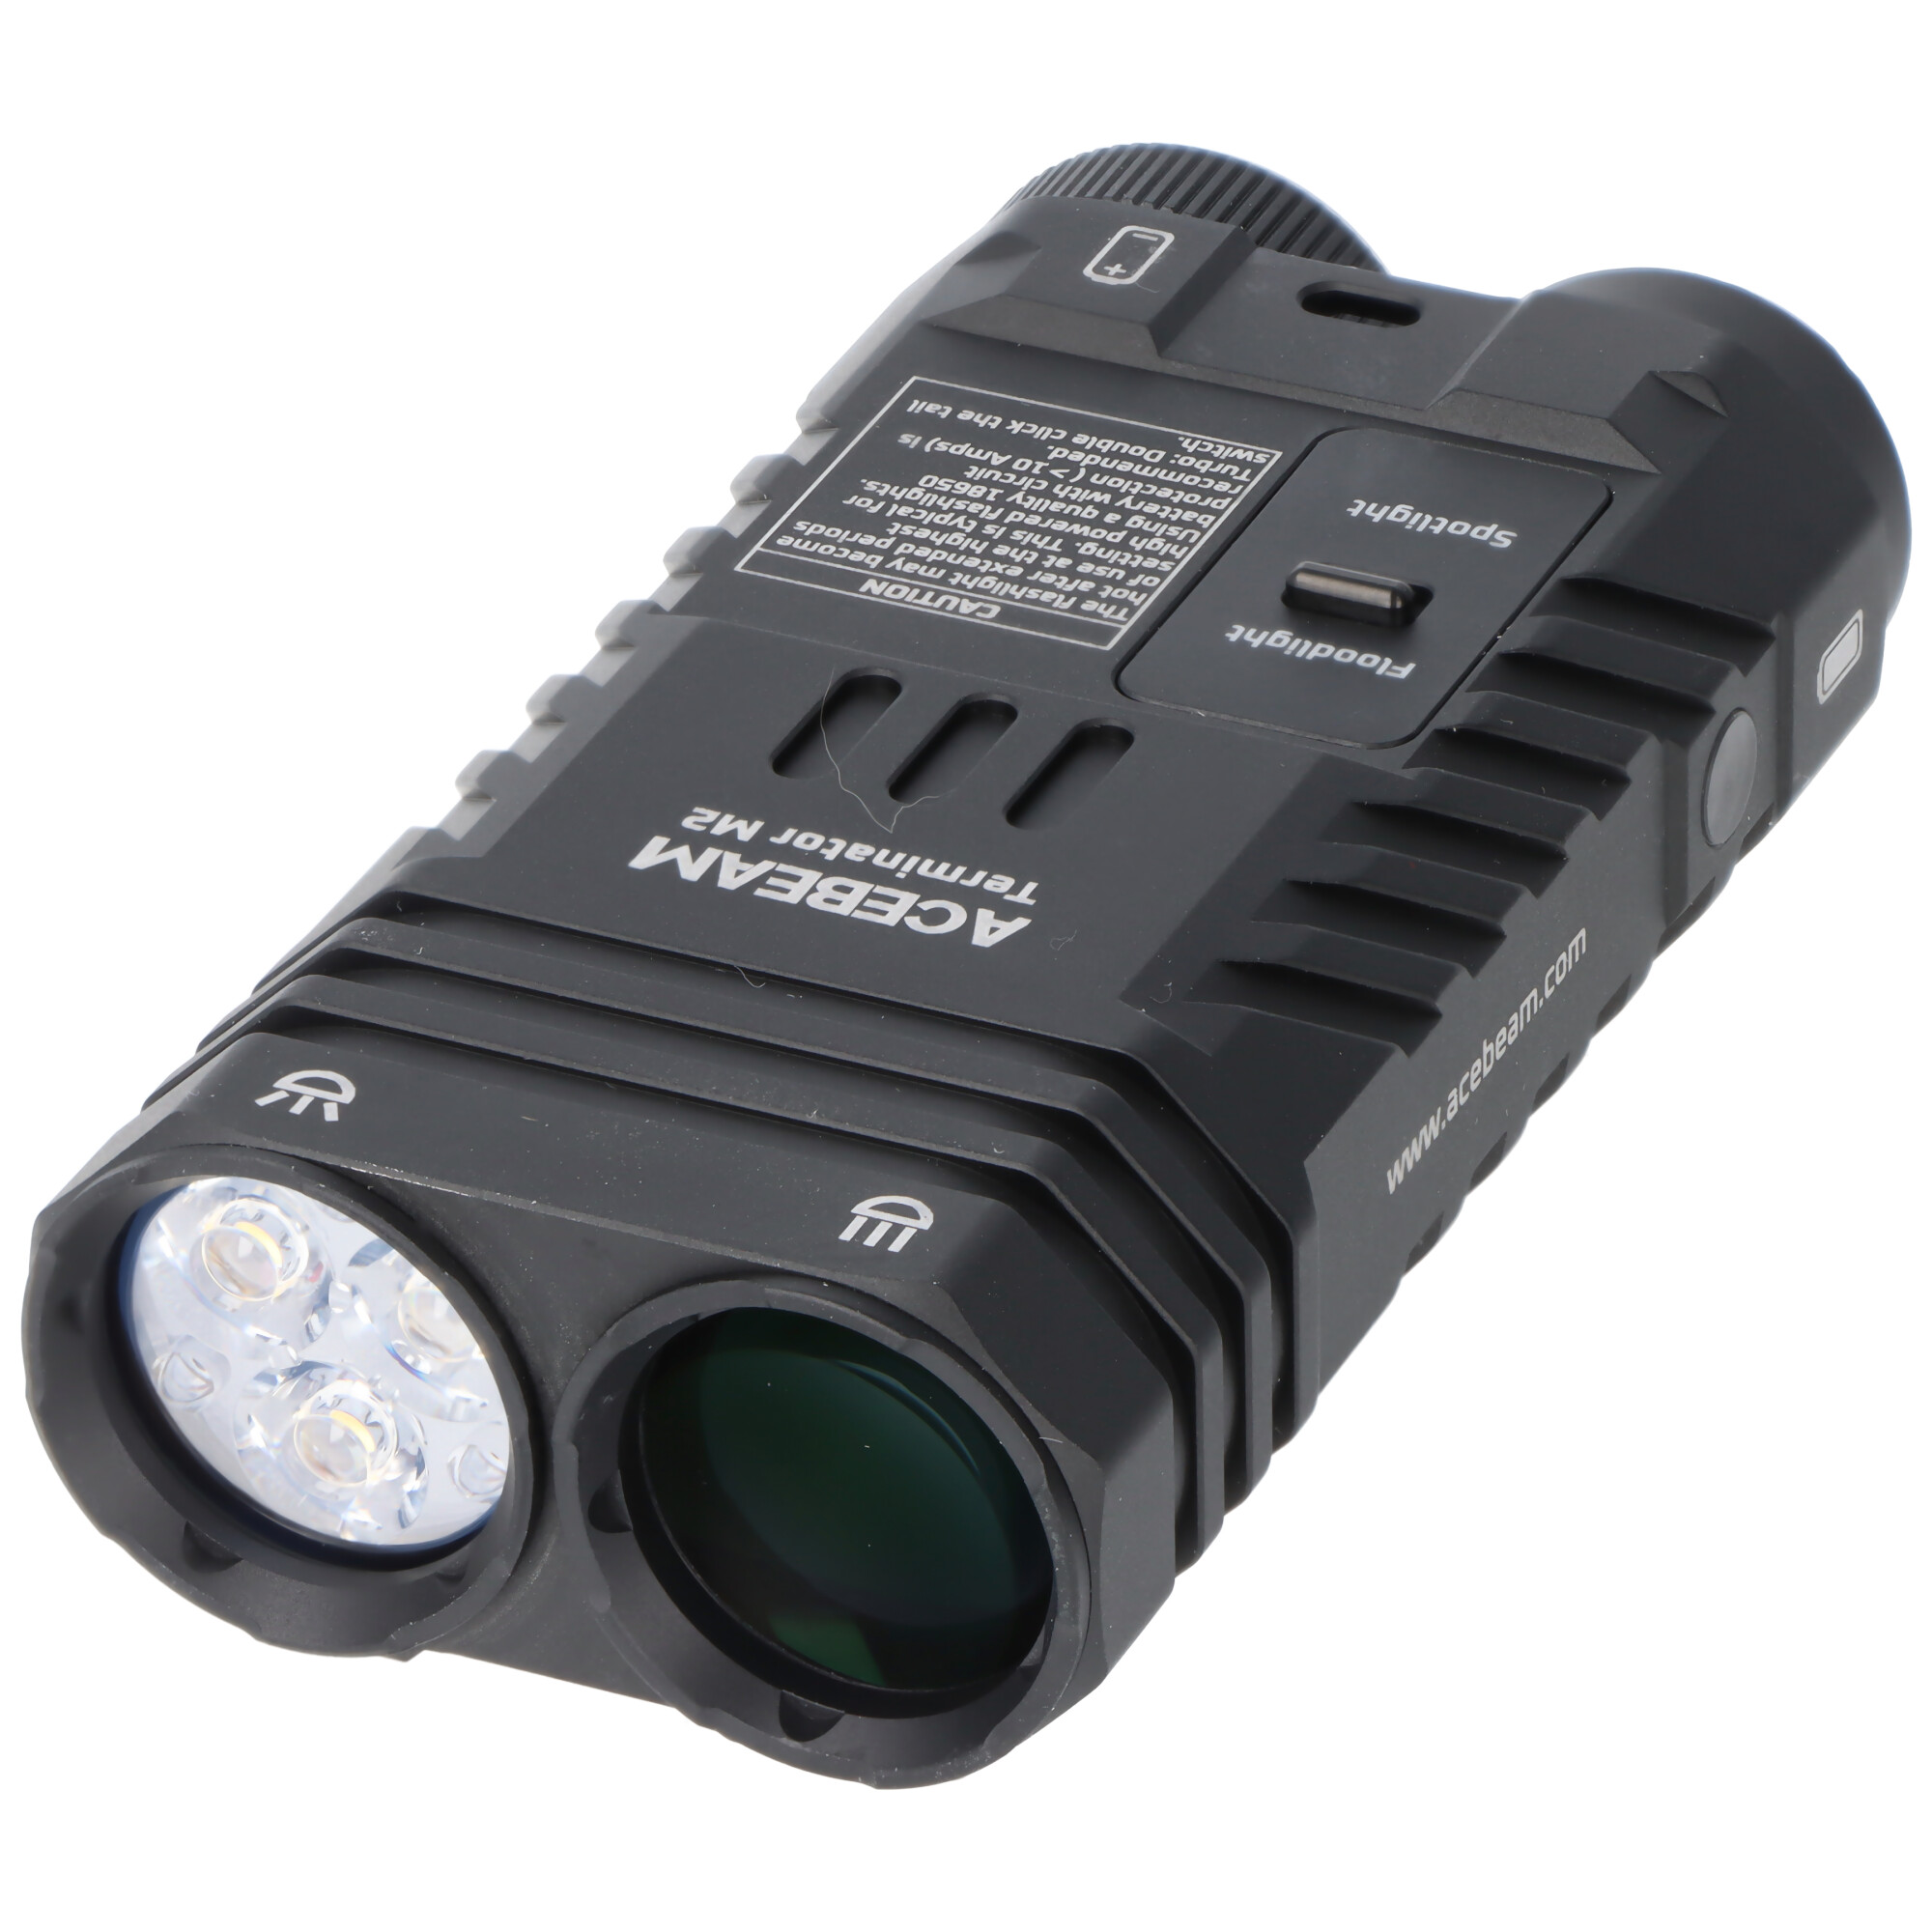 AceBeam Terminator M2 LED-Taschenlampe mit 3.200 Lumen, mit Spot-, Flut-, und AUX-Licht, grün